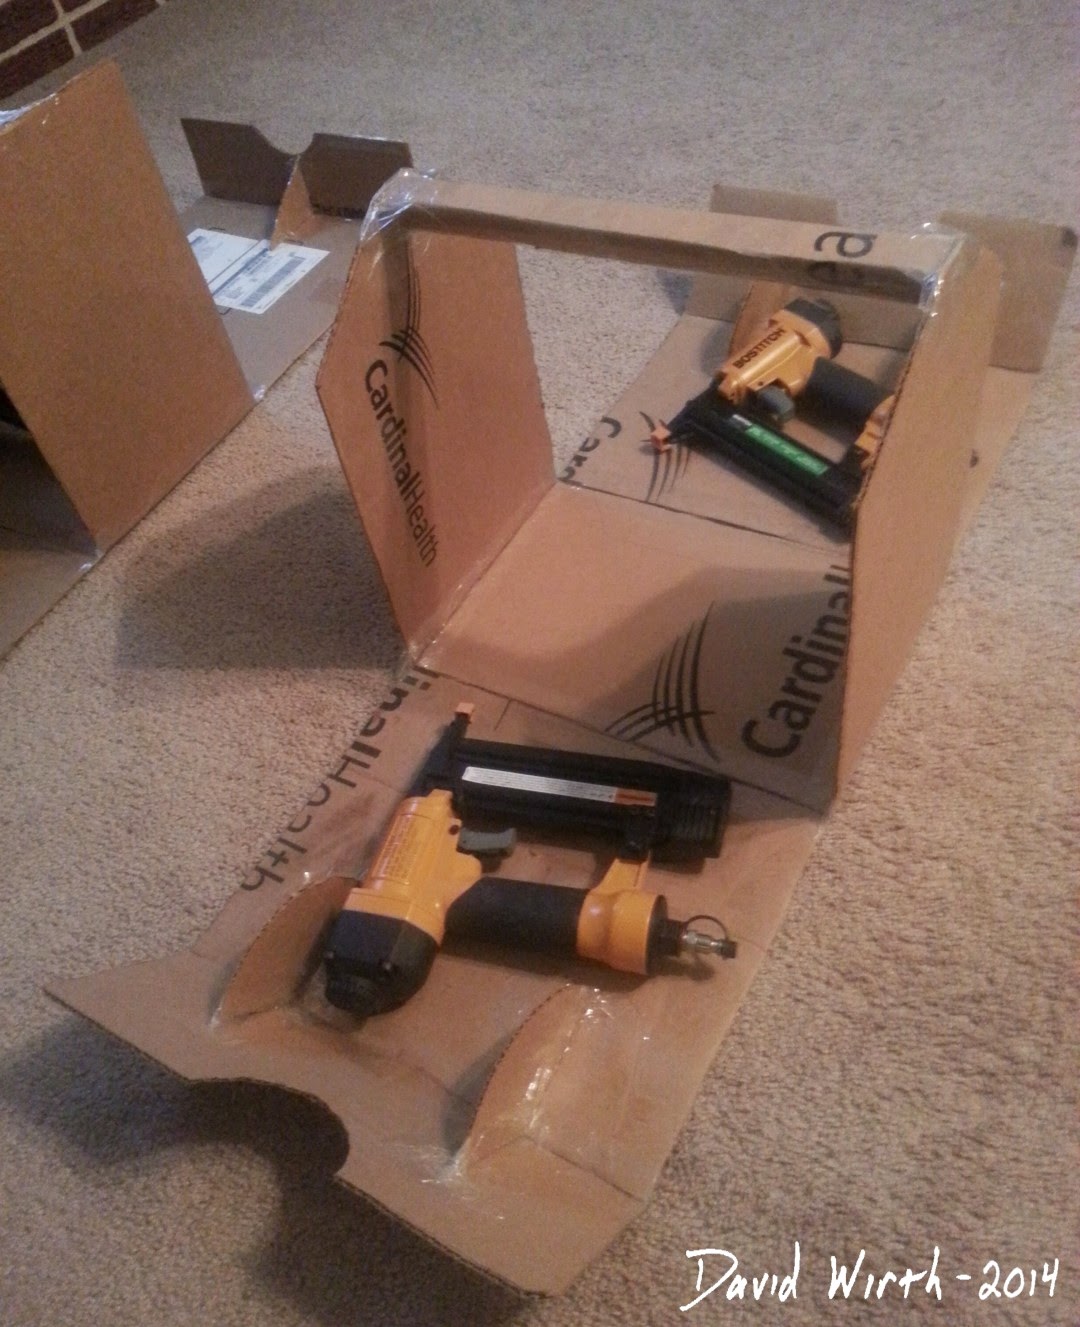 test fit tool box, cardboard, wood, nail gun